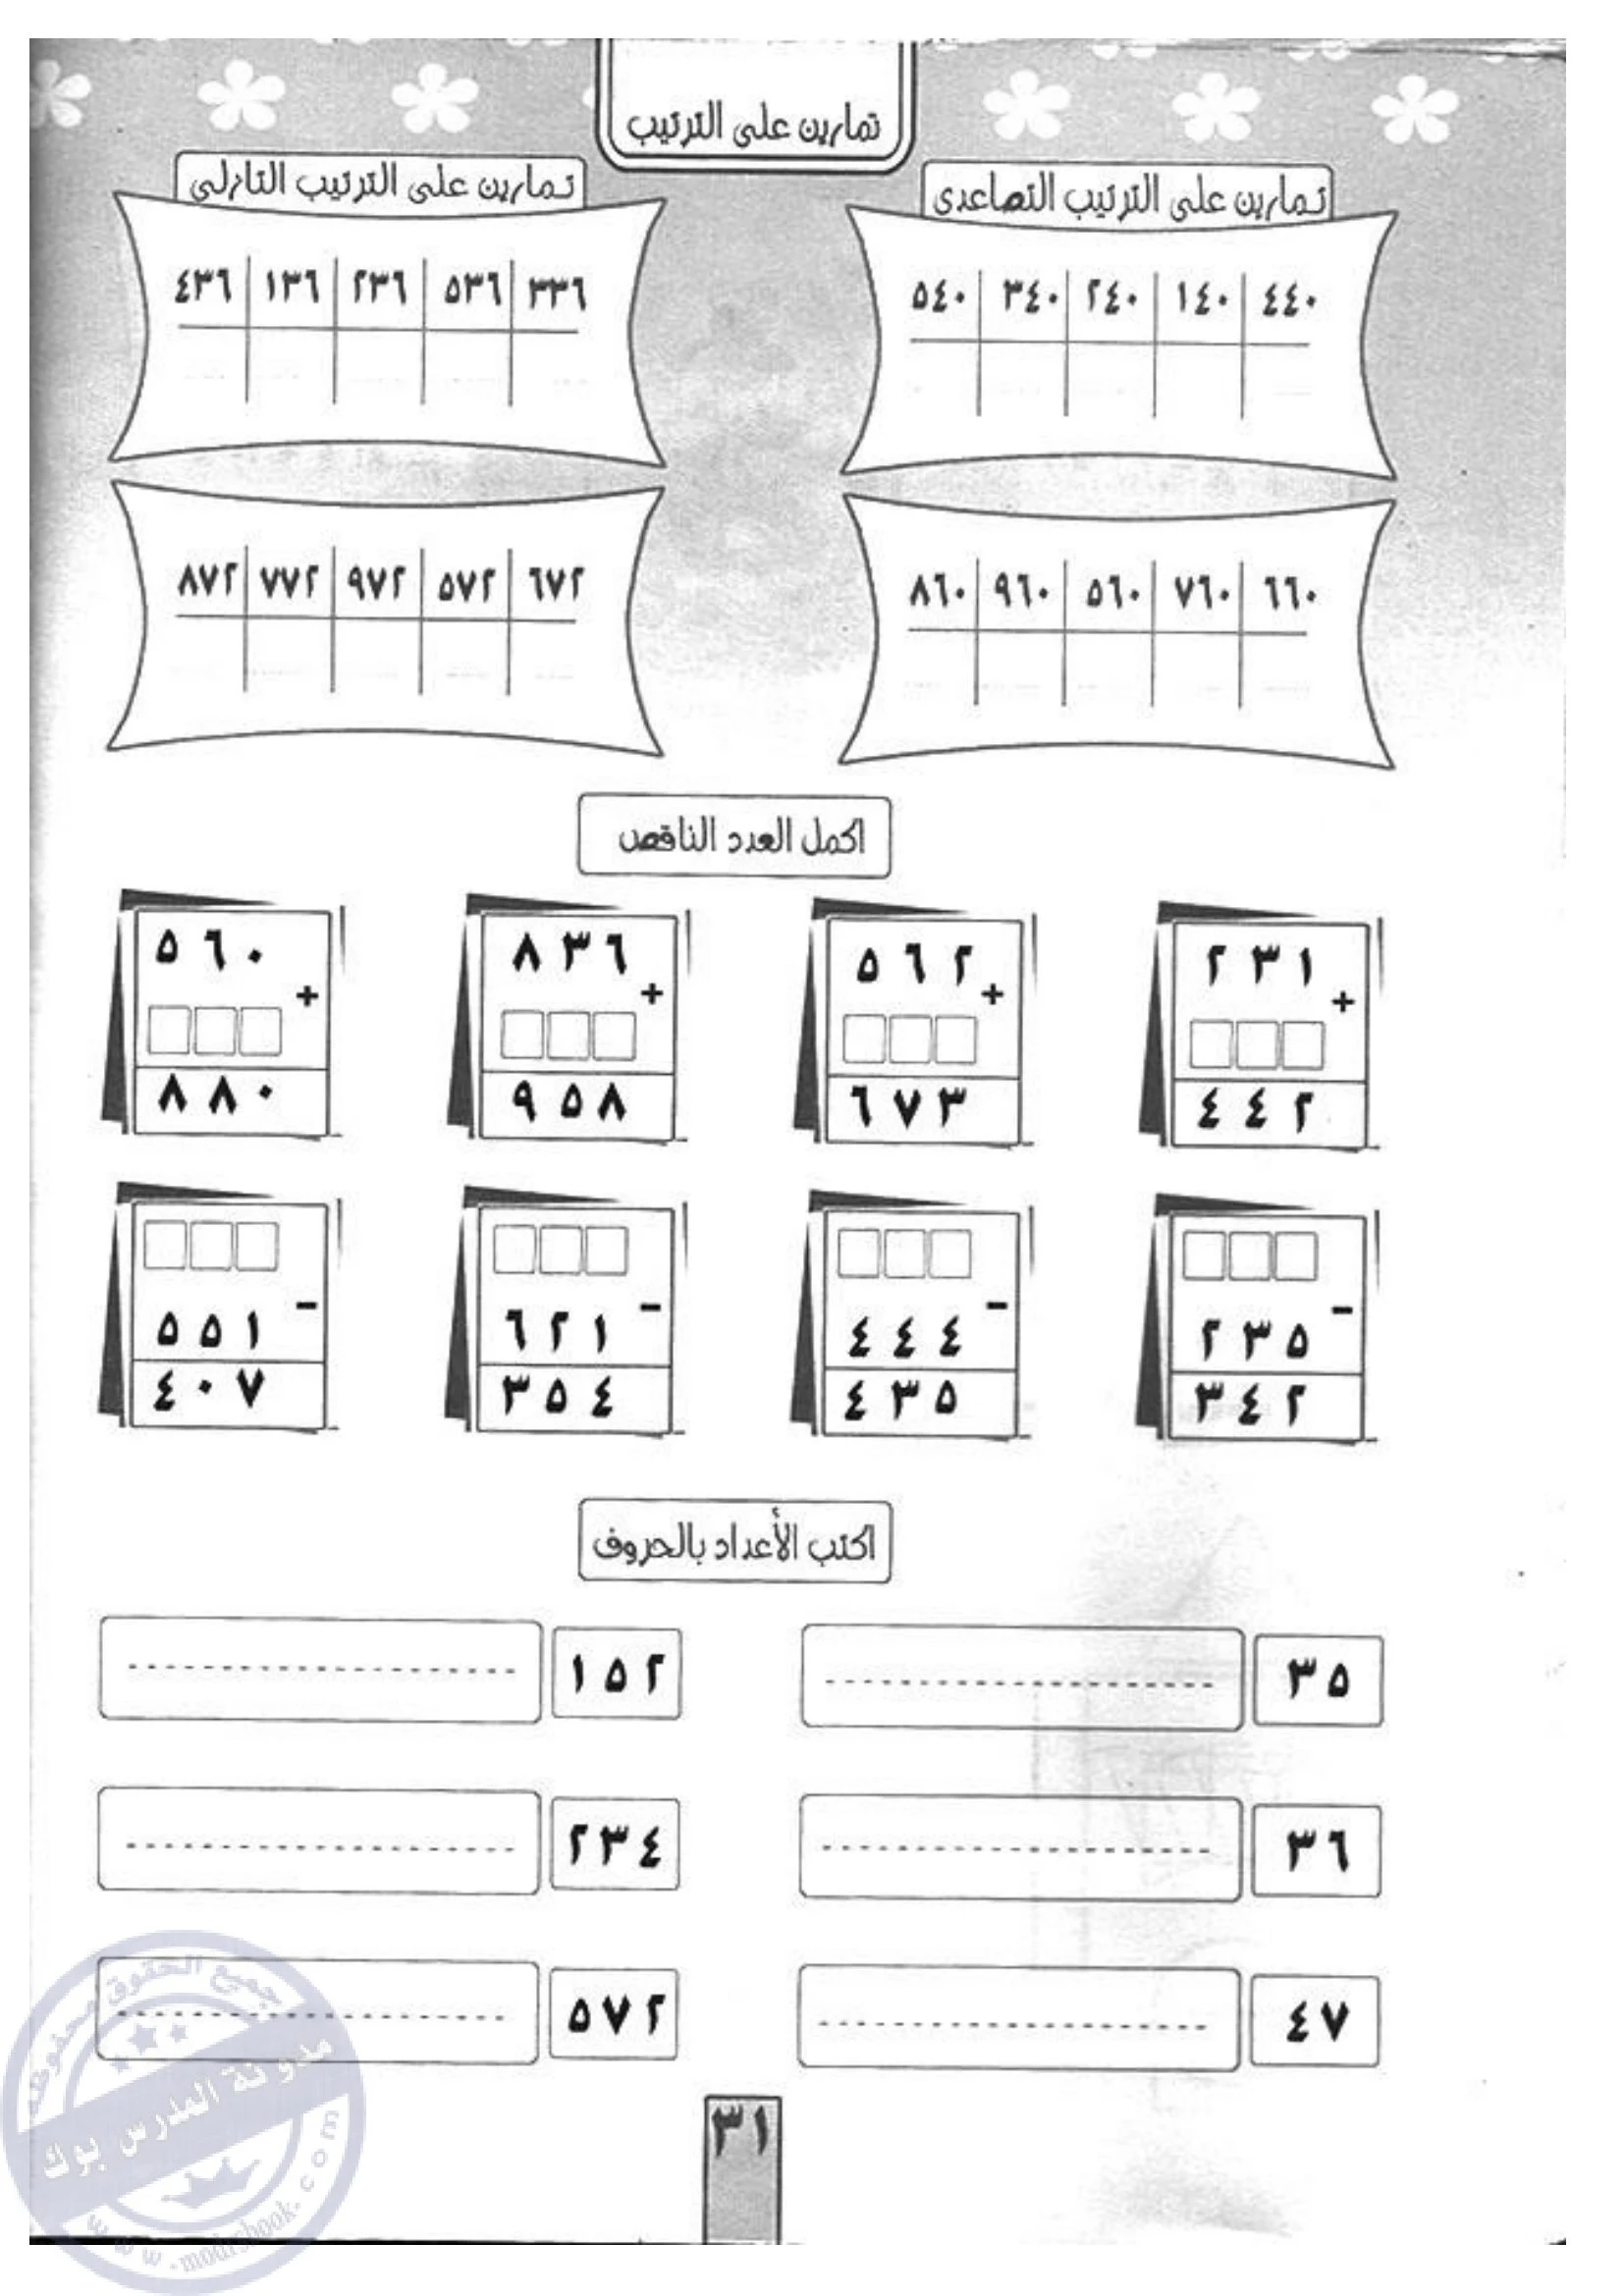 كتاب تعليم الرياضيات لرياض الأطفال pdf تحميل مباشر